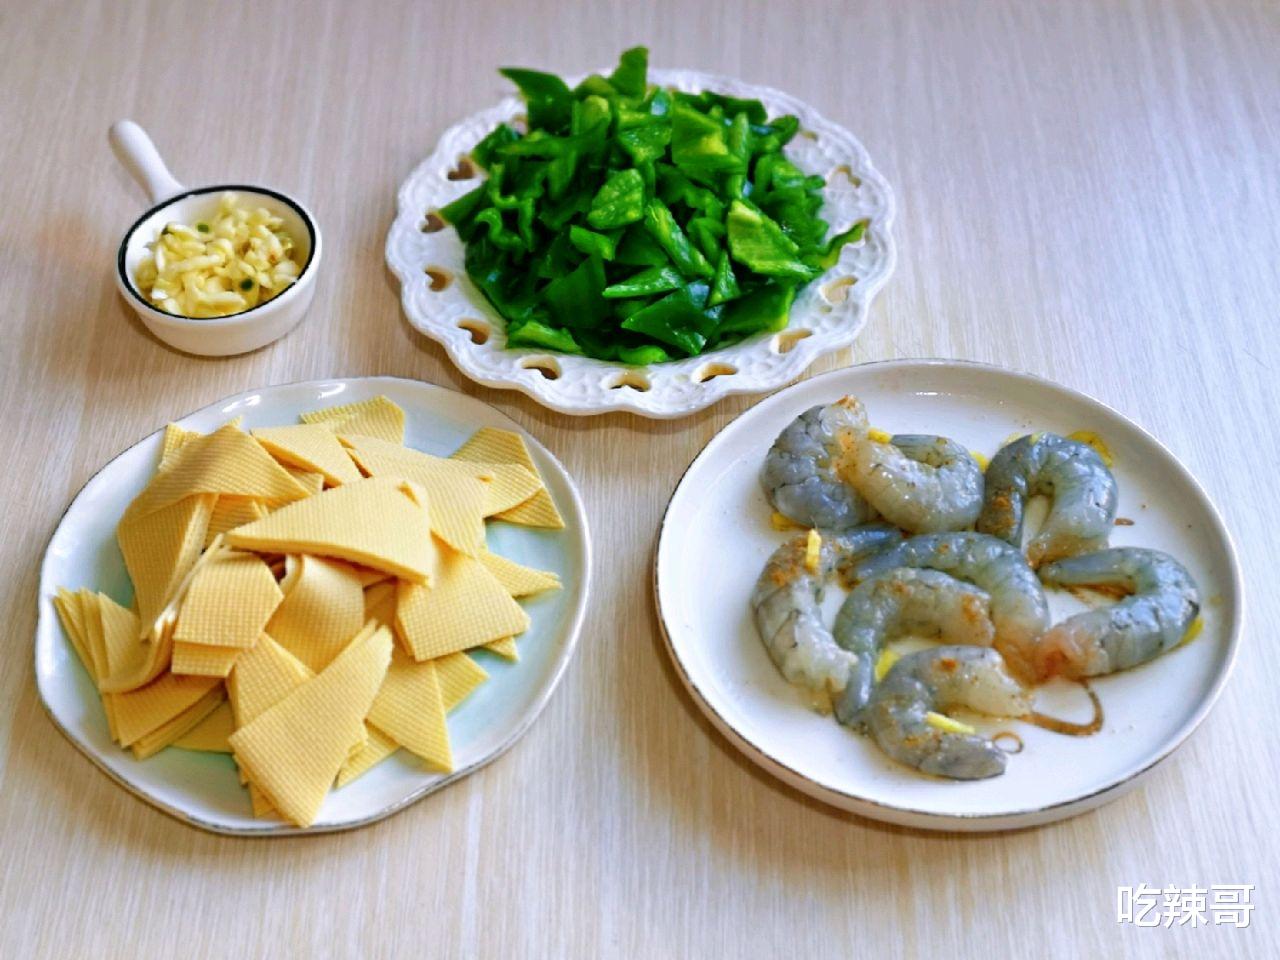 干皮豆腐青椒炒虾仁，营养双在线的美食具体该怎么做